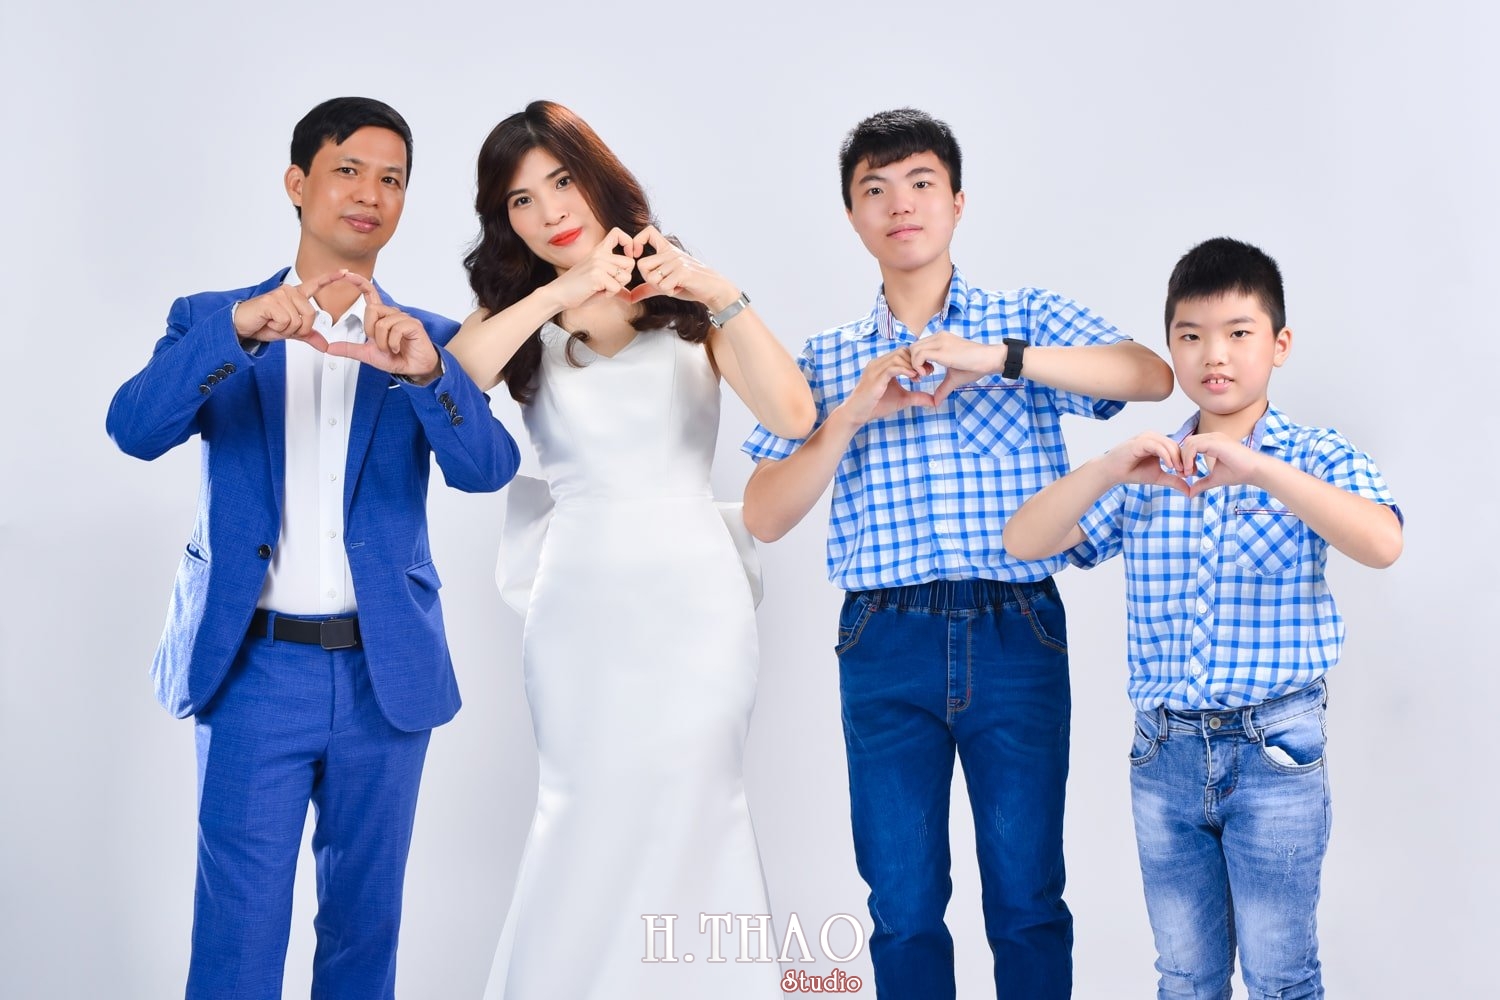 Anh gia dinh 4 nguoi 8 min - Chụp ảnh gia đình kiểu hàn quốc, concept & giá chụp tại Tp.HCM – HThao Studio